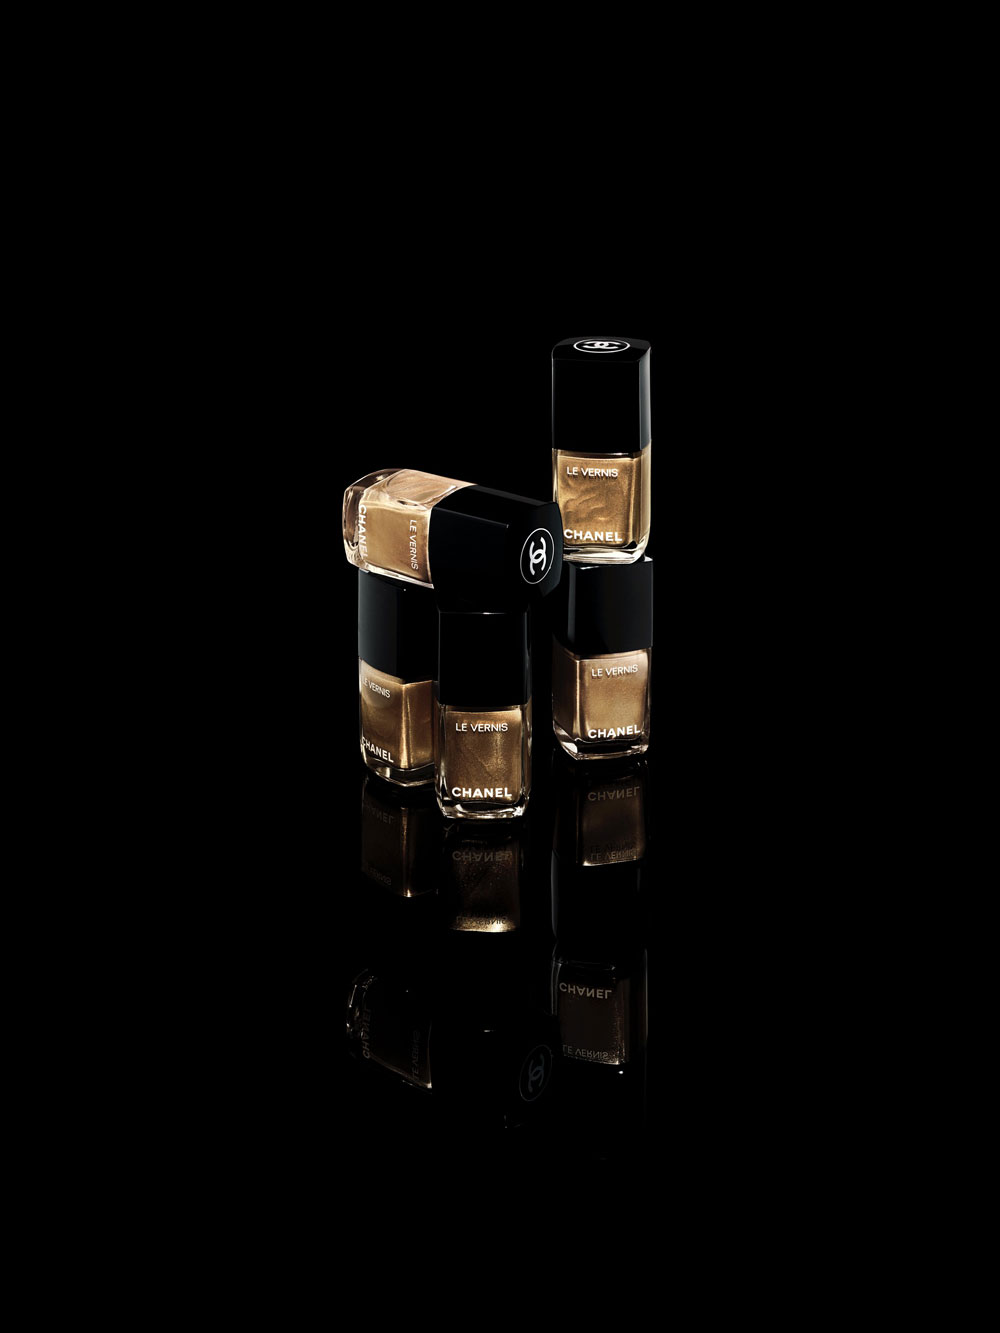 Die diesjährige Holiday Collection von Chanel ist eine glänzend-funkelnde Hommage an die goldenen Kette an der legendären 2.55-Handtasche. 